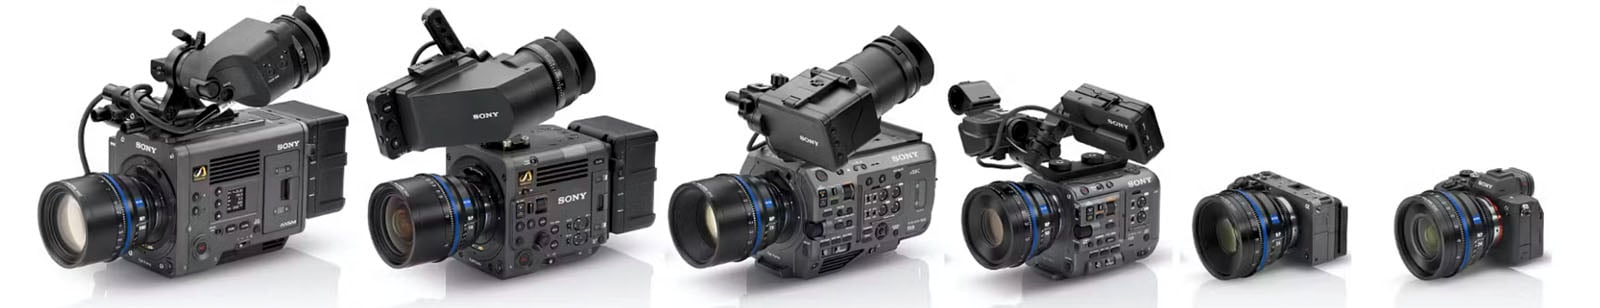 Zeiss Nano Prime cinema lenses for full-frame E-mount cameras